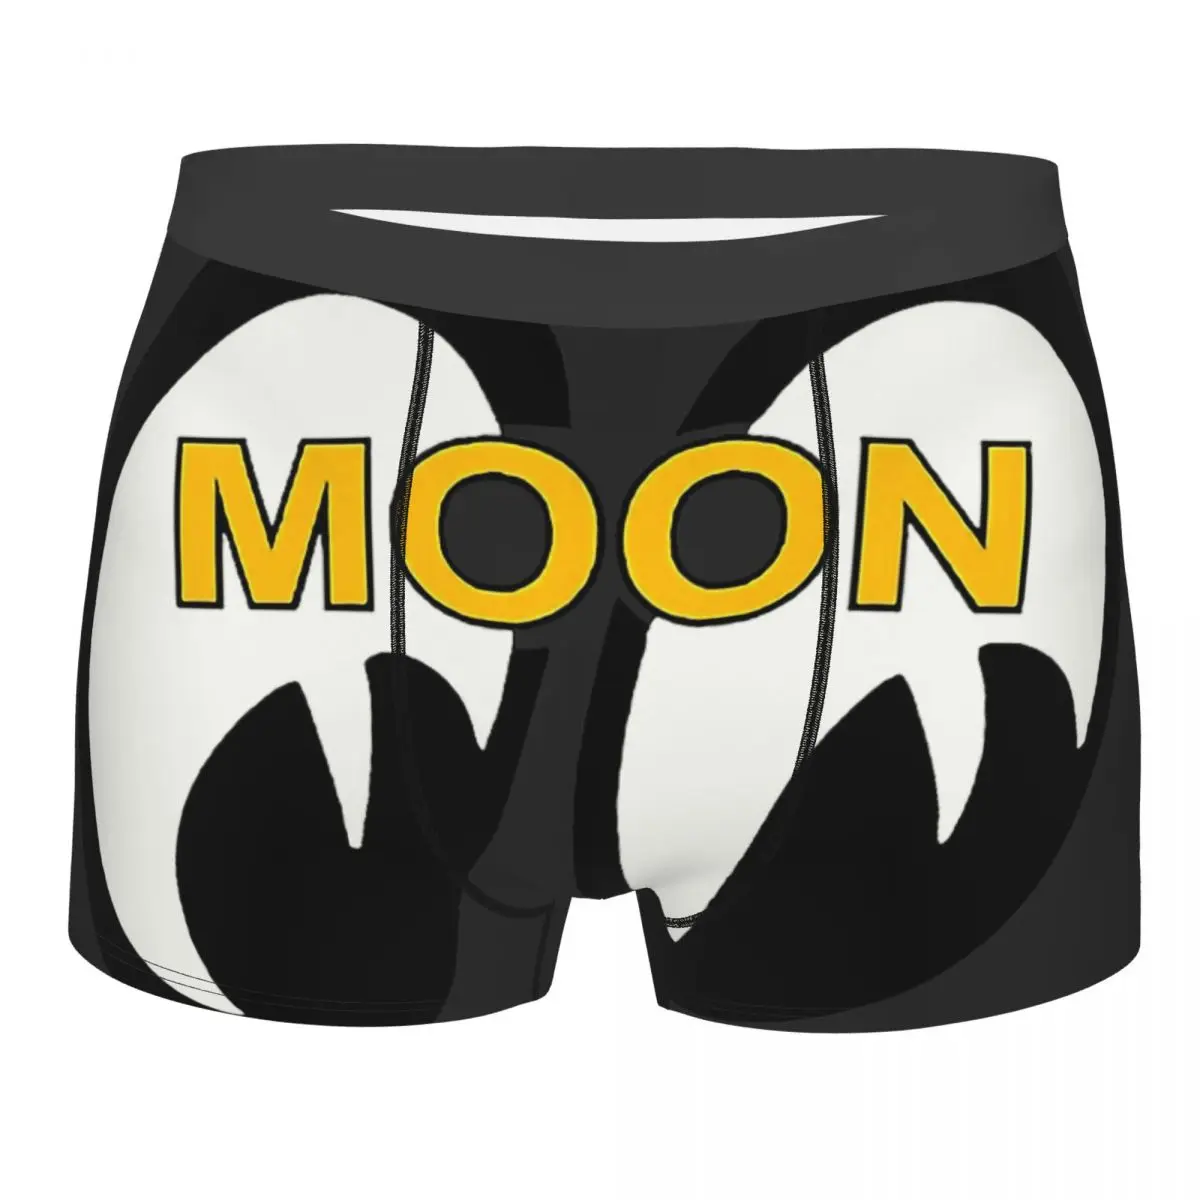 Классические мужские трусы-боксеры Mooneyes Moon Equipped, специальные трусы с высокой воздухопроницаемостью, высококачественные шорты с 3D-принтом, идея подарка